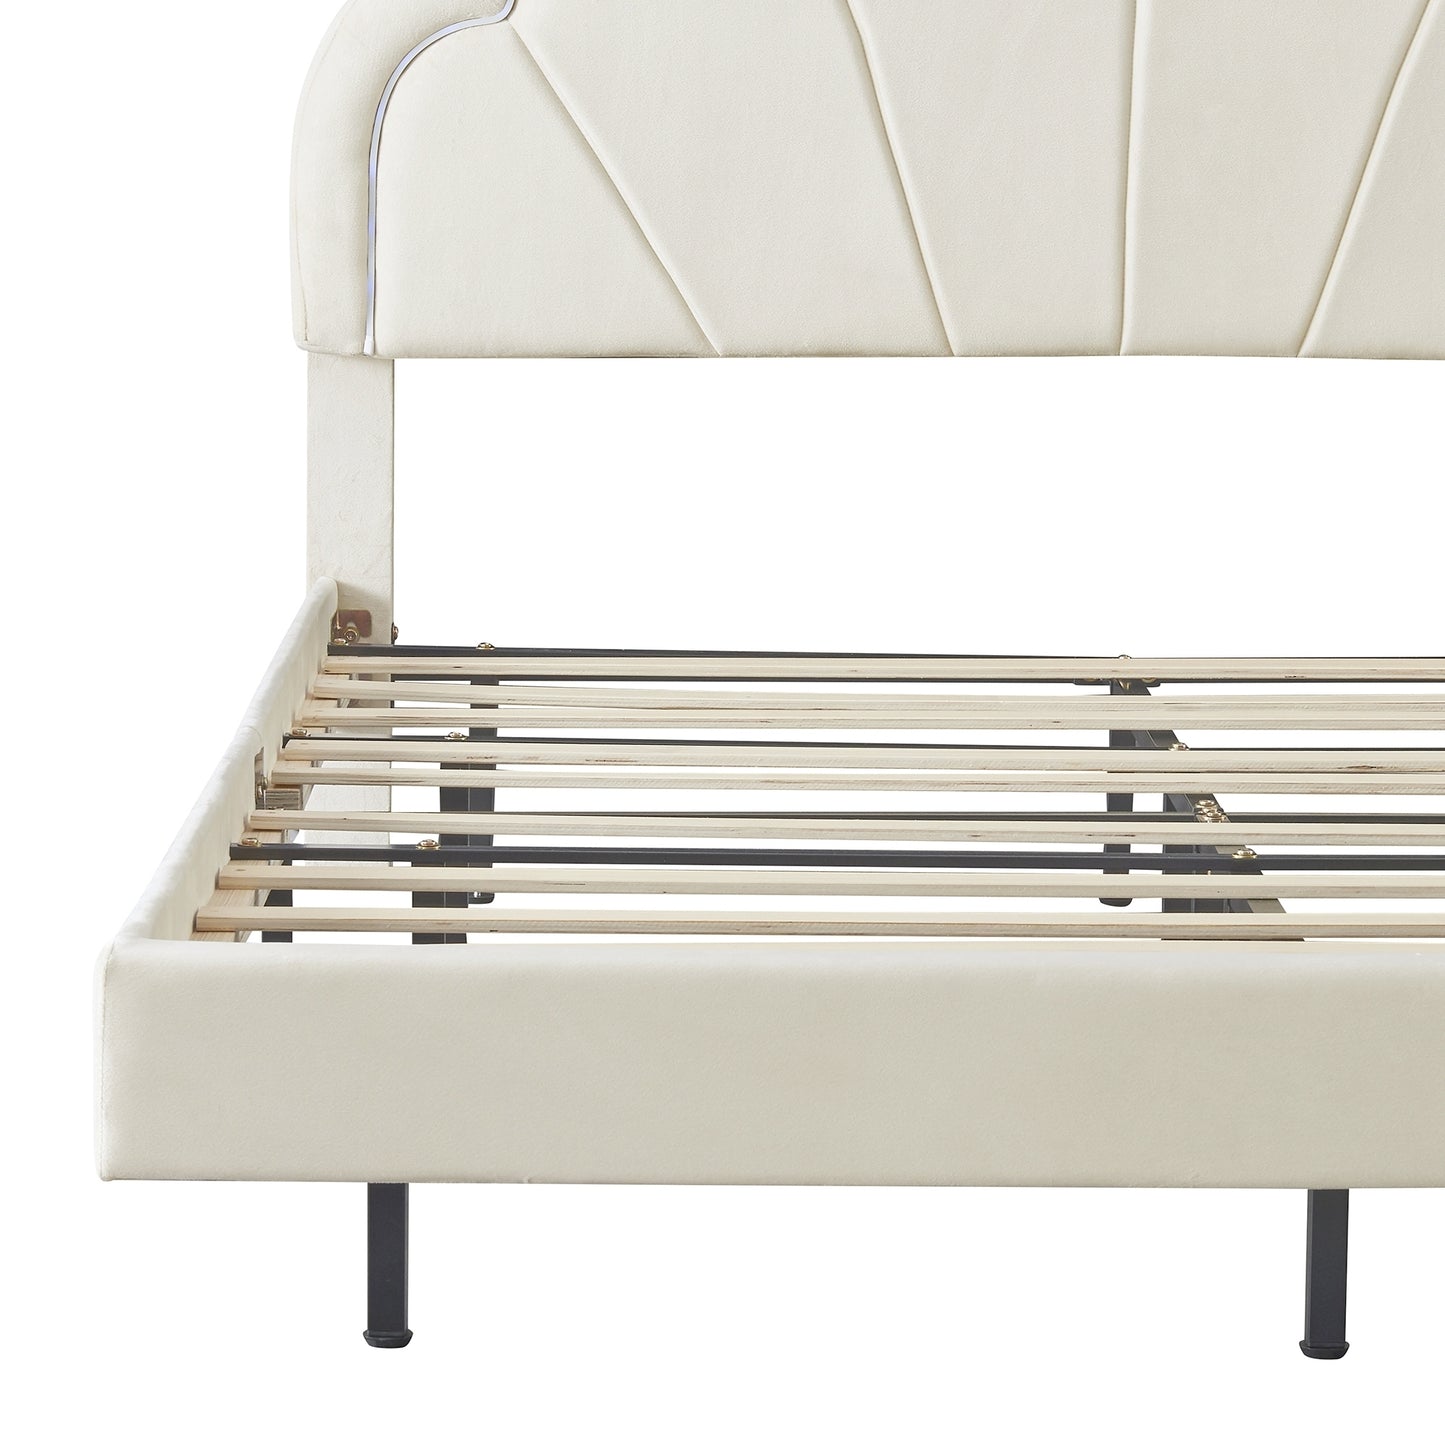 Queen Upholstered Smart LED Bed Frame with Elegant Flowers Headboard,Floating Velvet Platform LED Bed with Wooden Slats Support,Beige